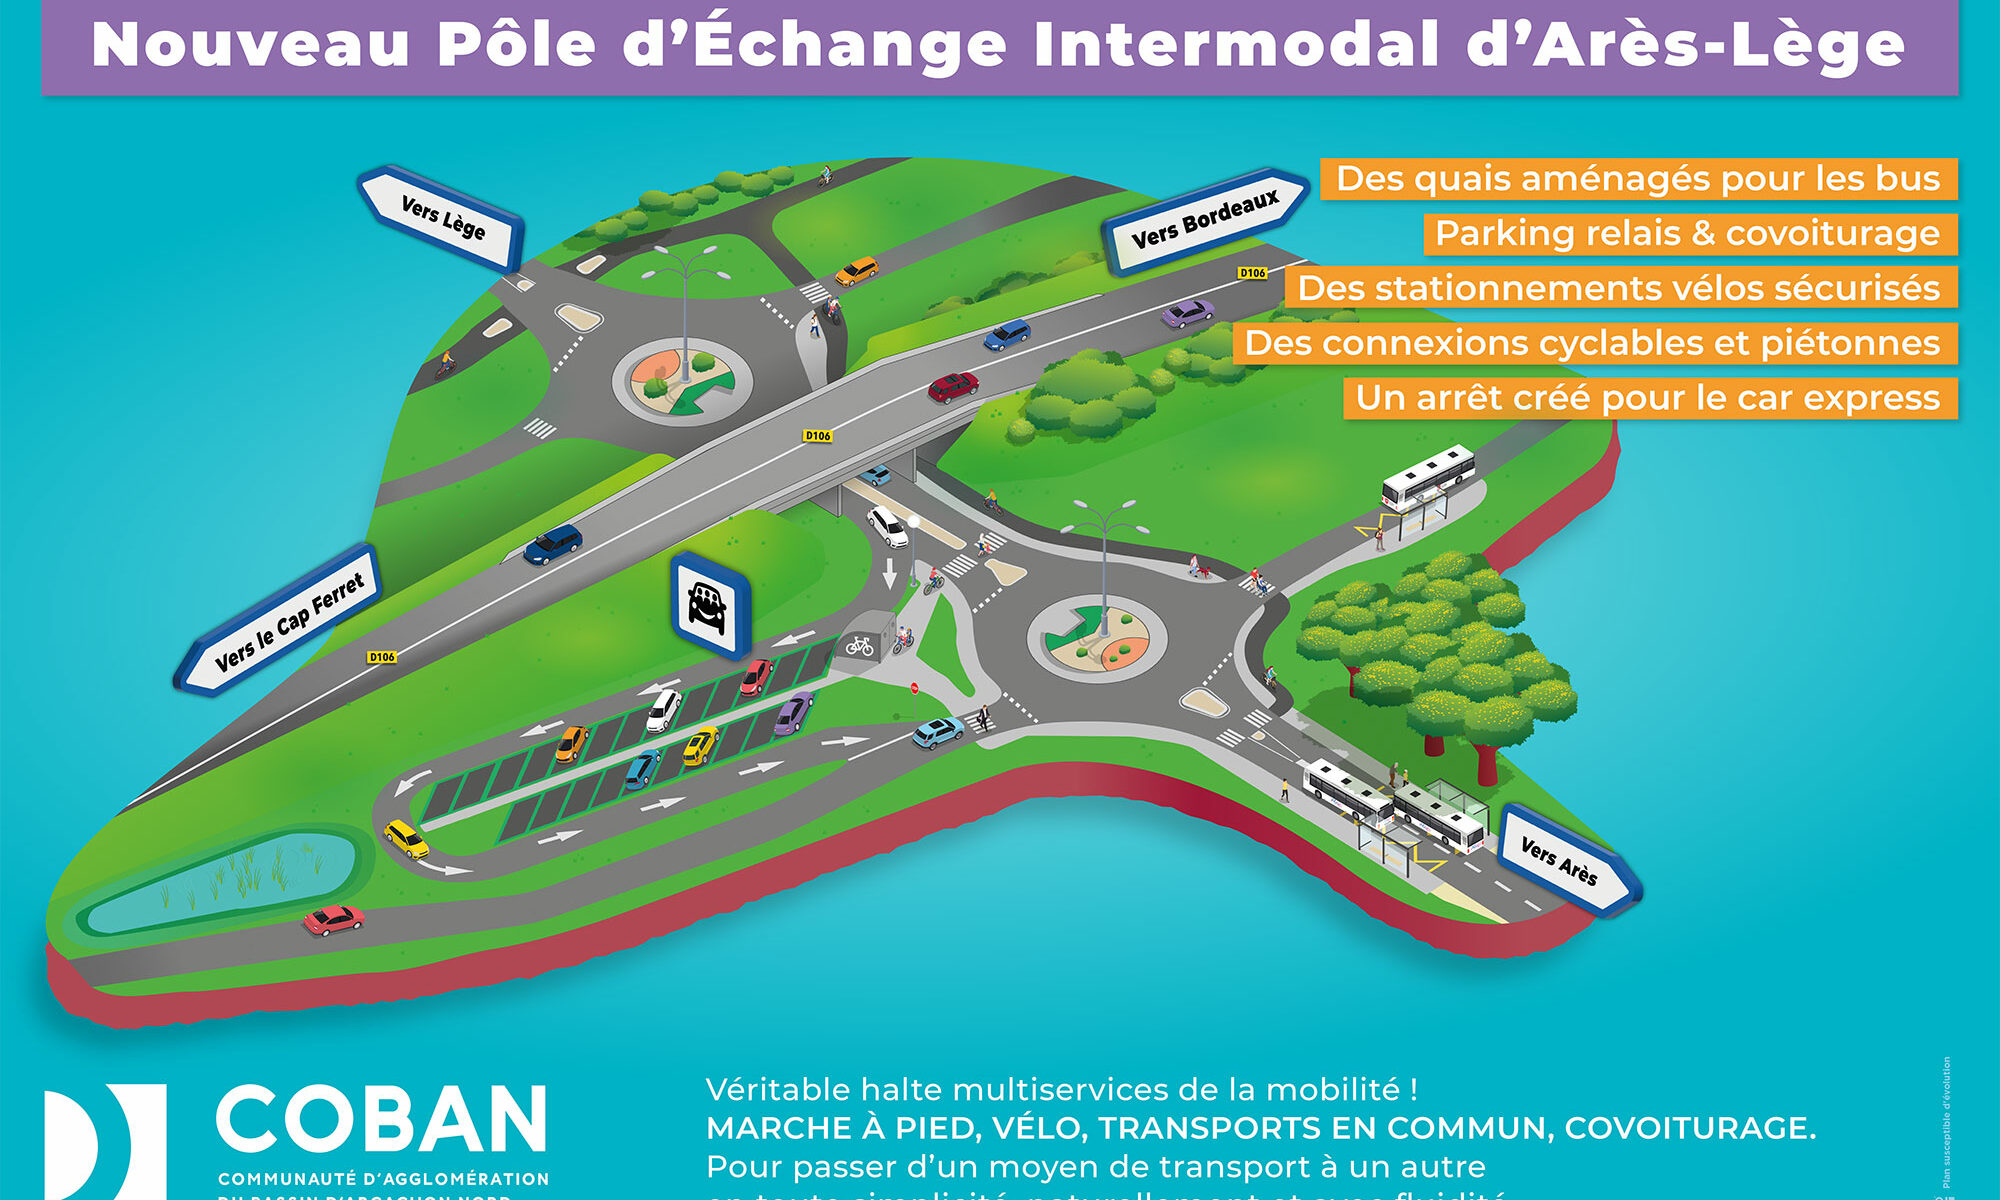 Pôle d'Échange Intermodal d'Arès-Lège (PEI)